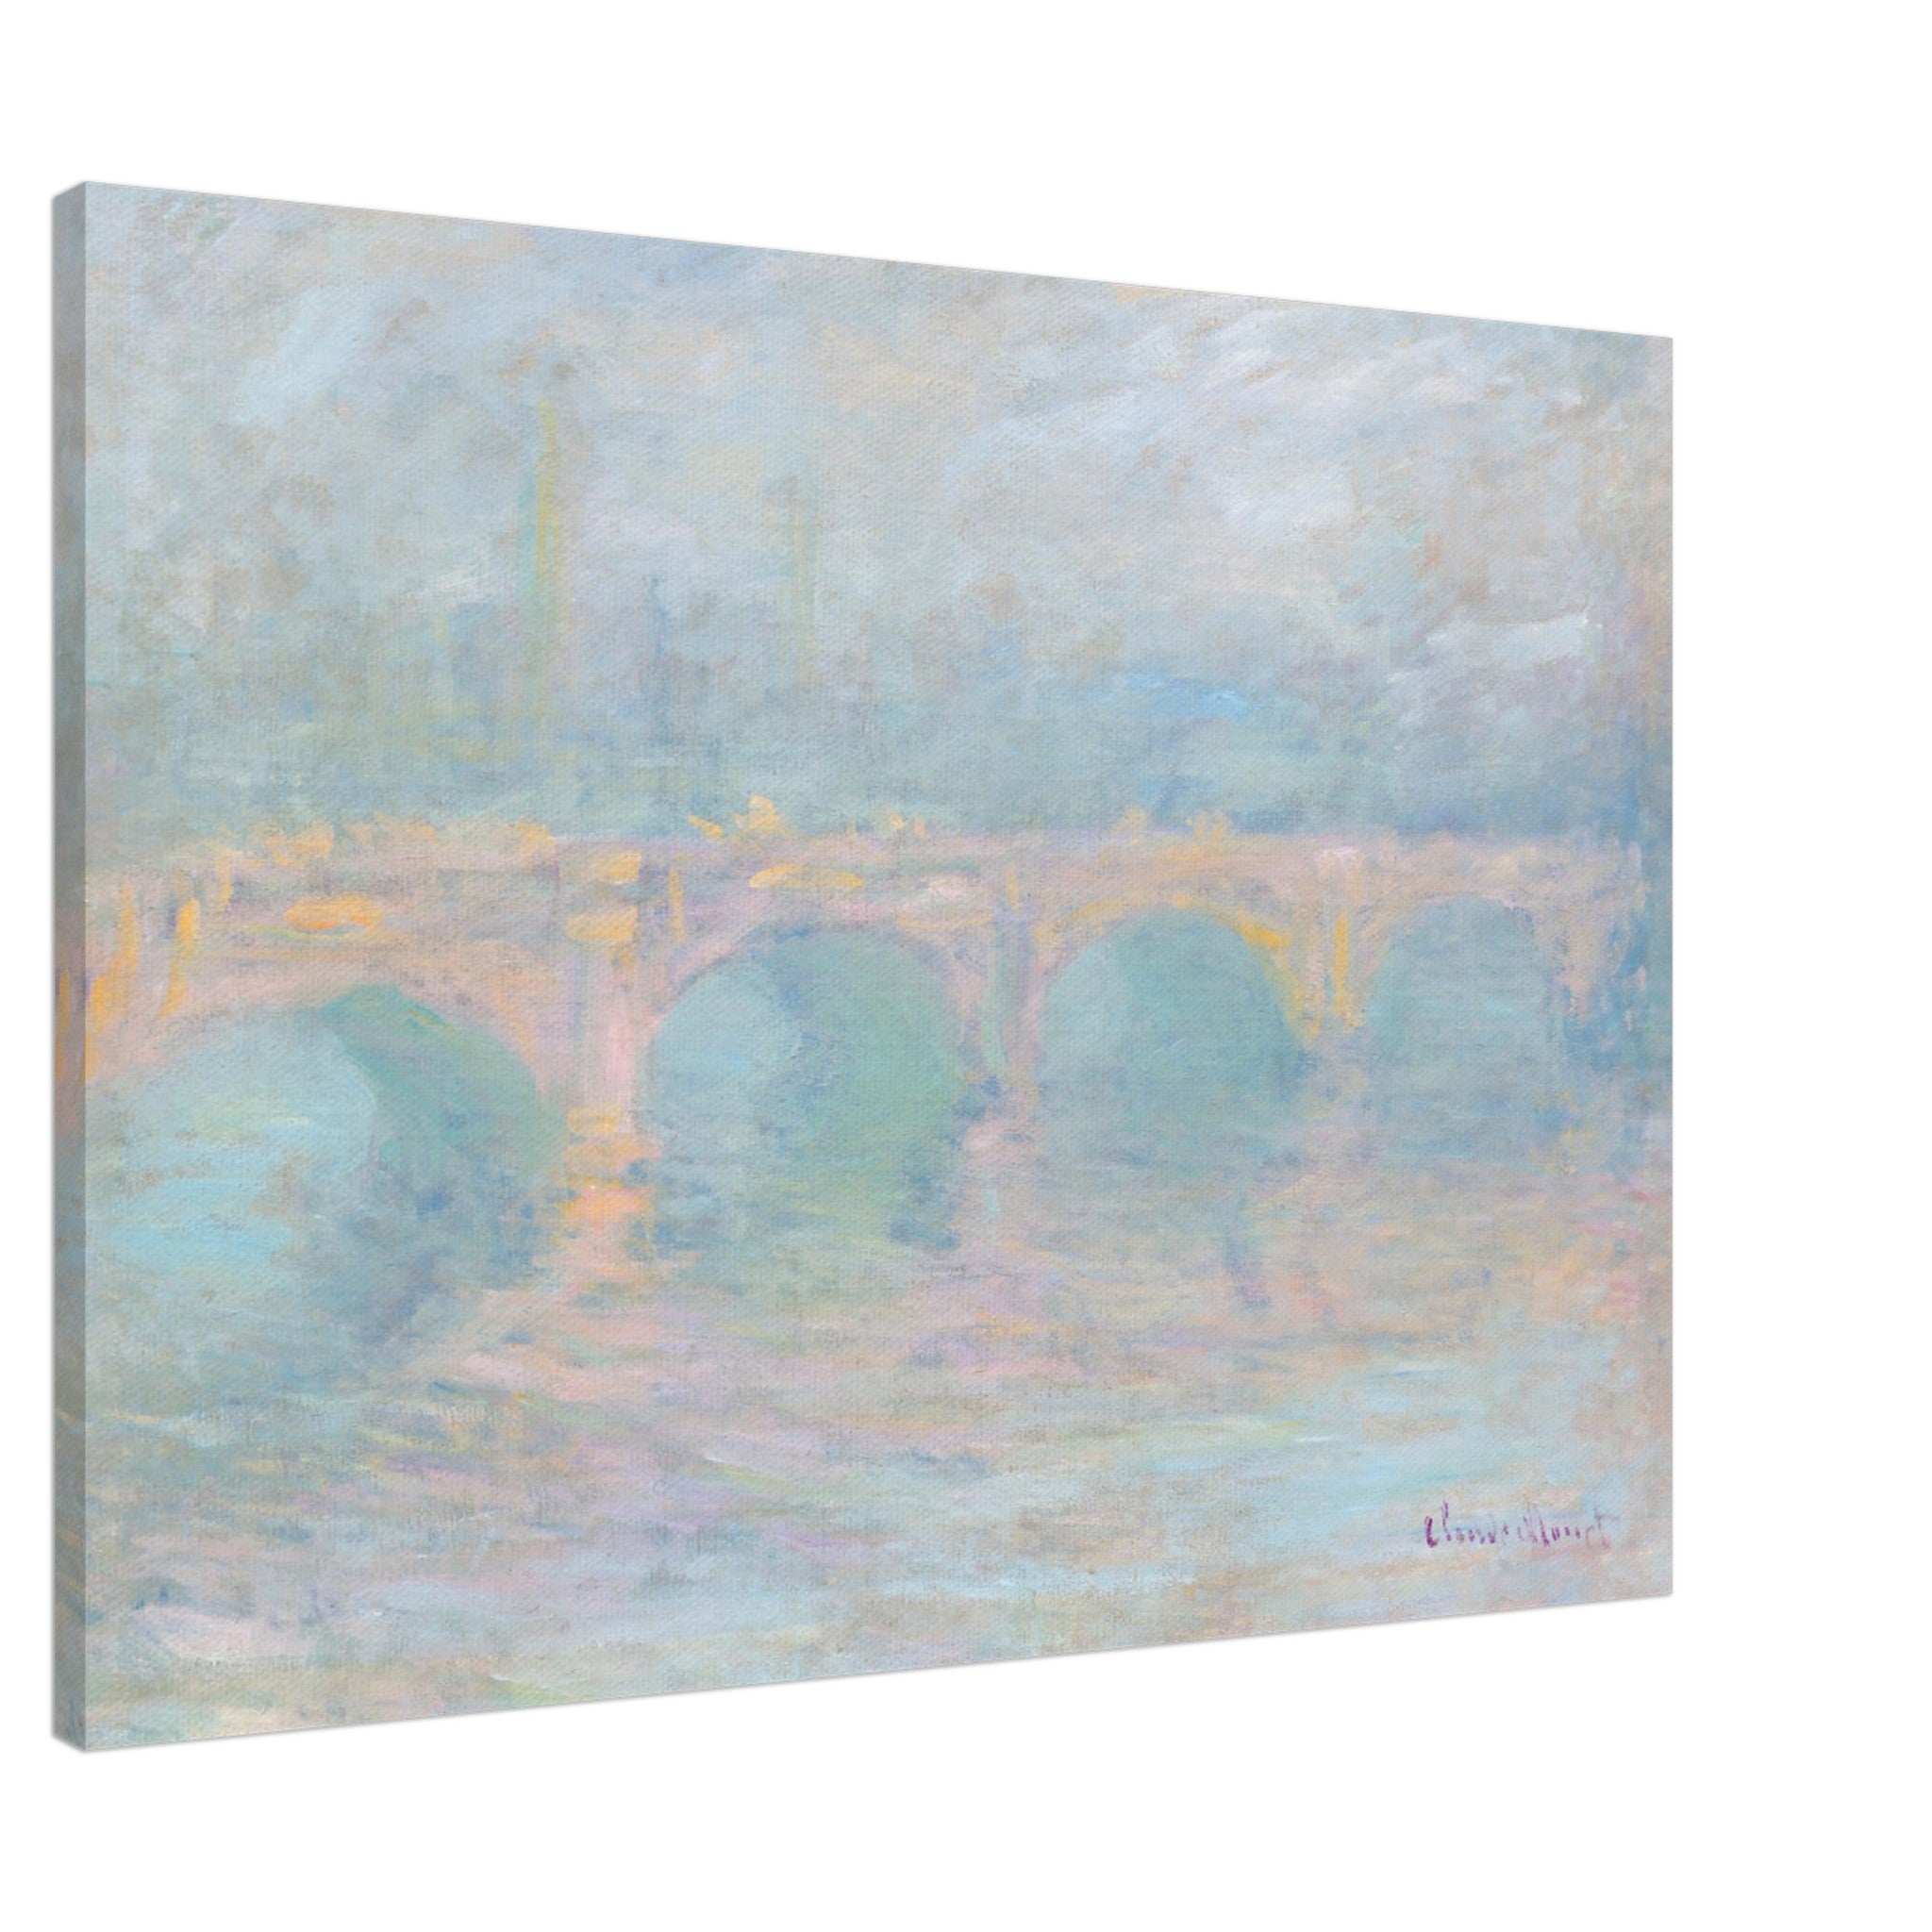 Special Edition Canvas - Claude Monet - Waterloo Bridge